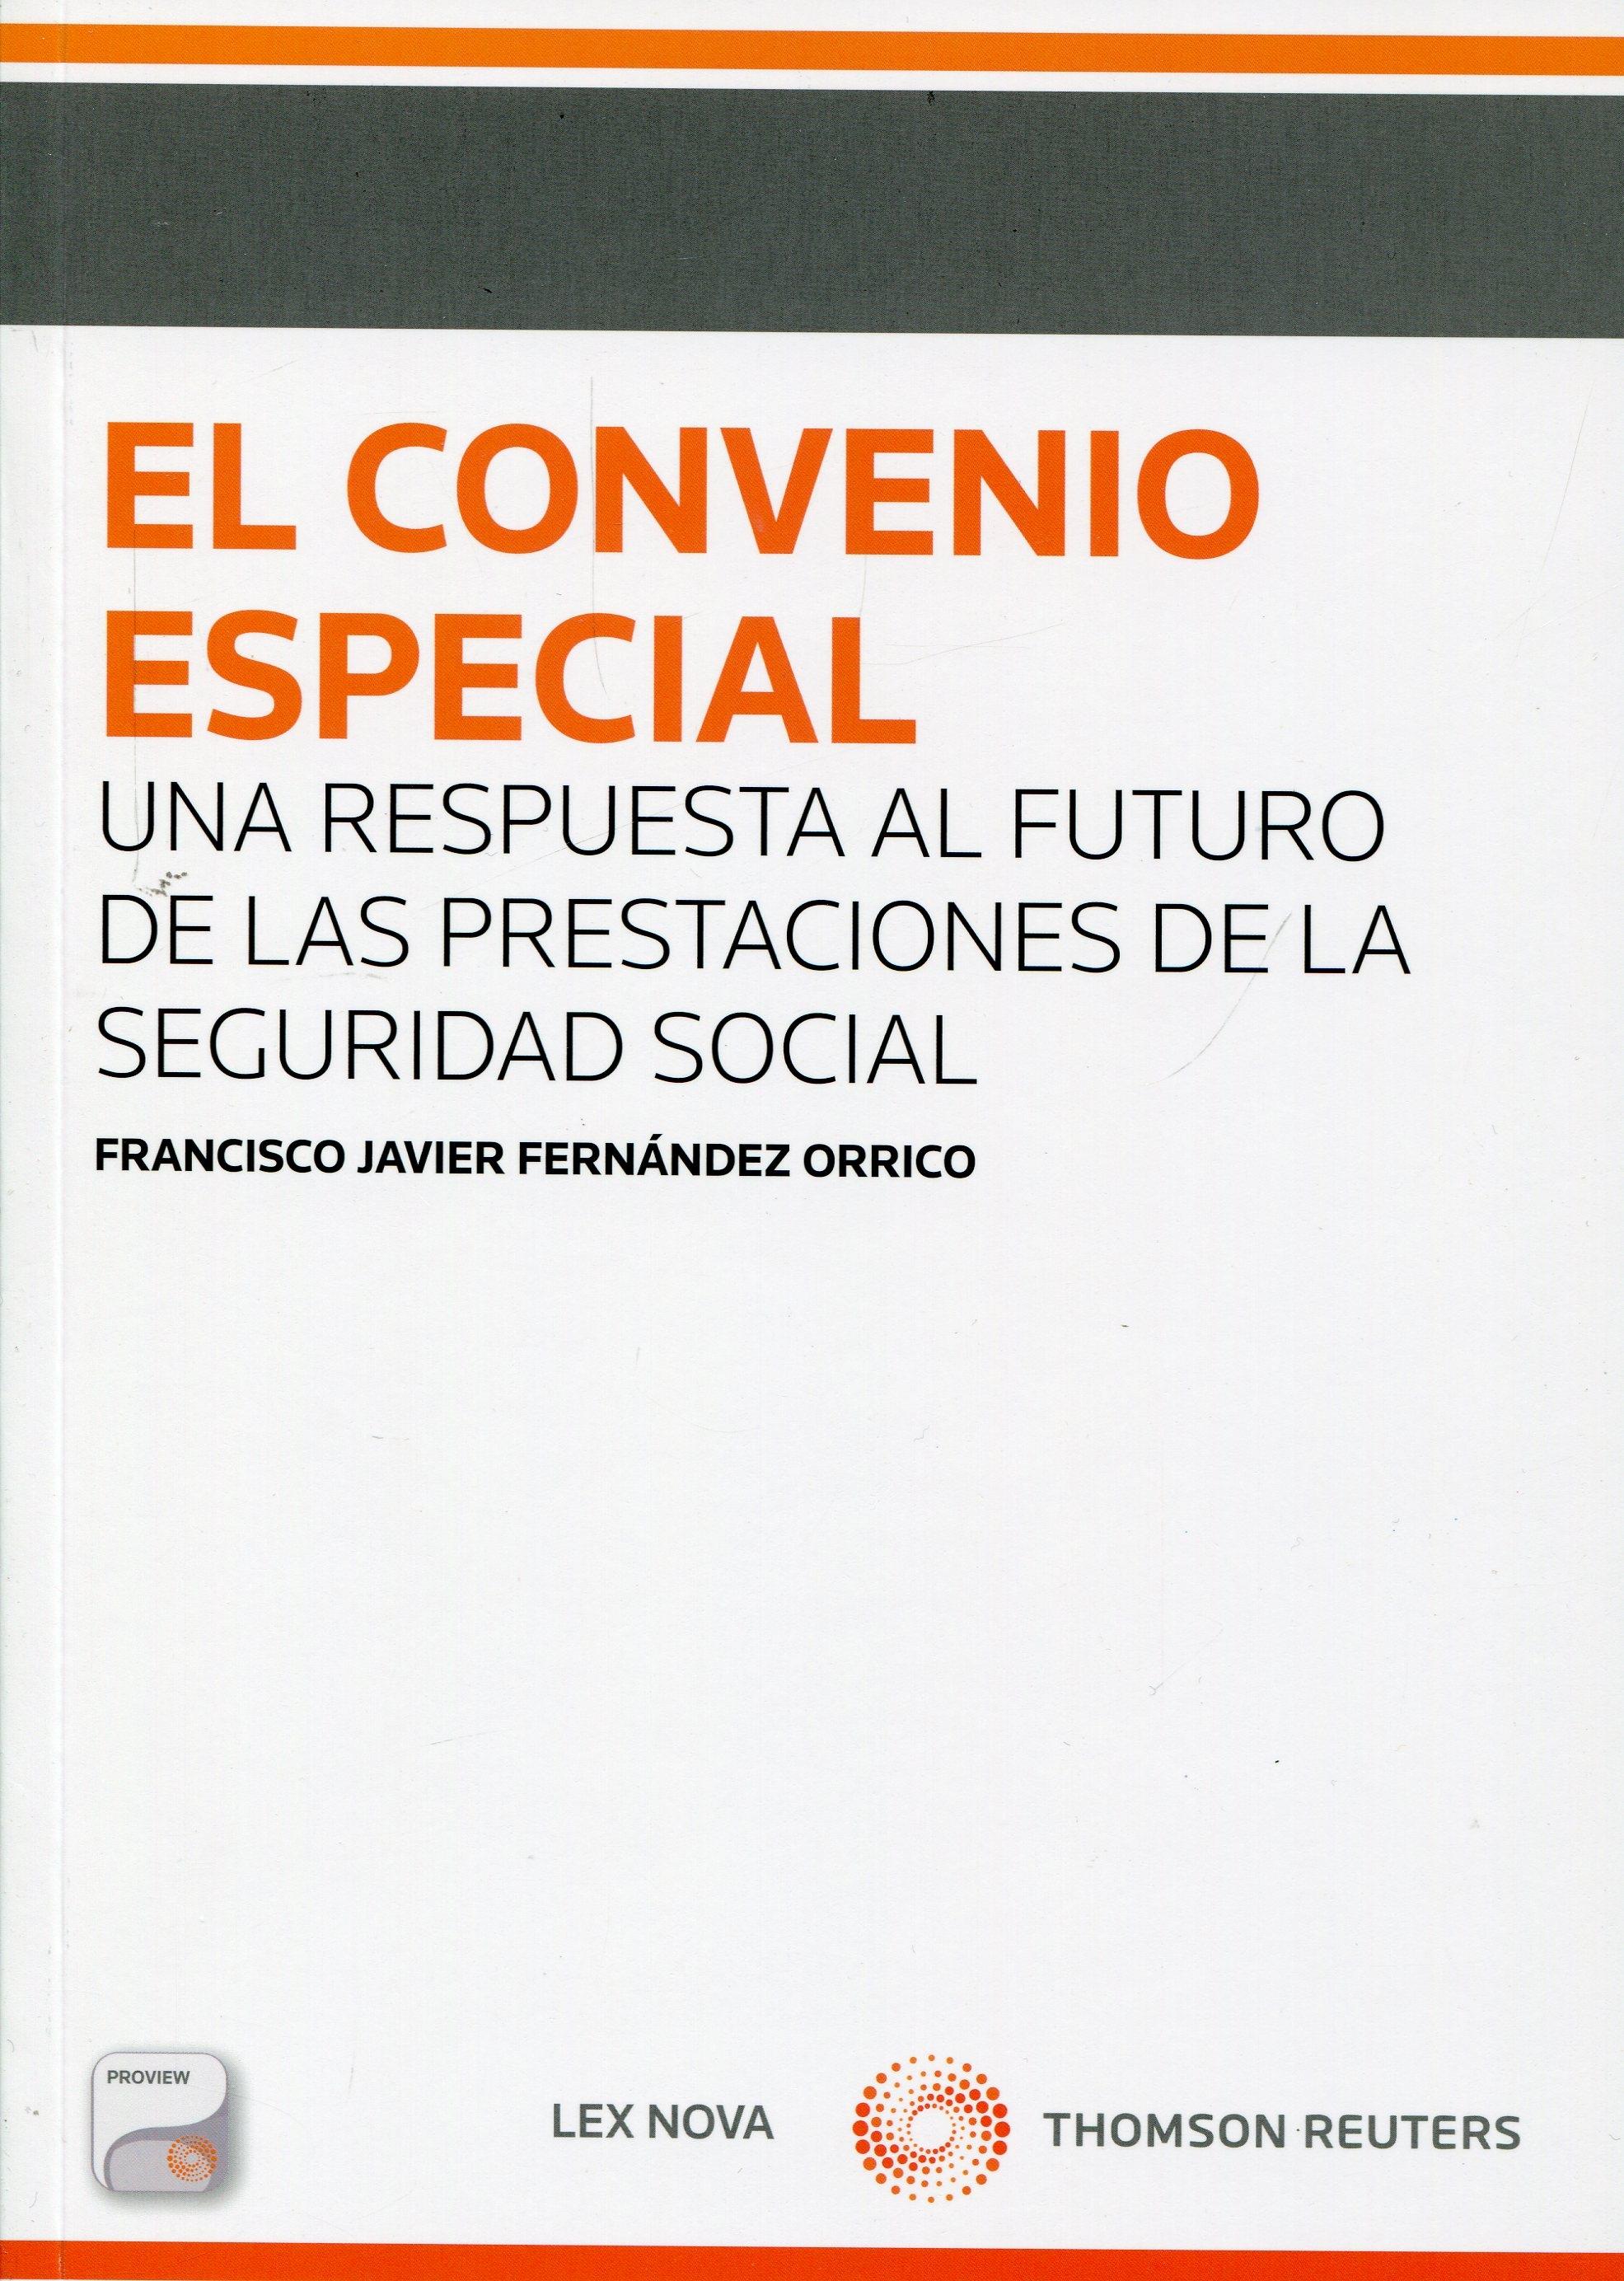 El convenio especial "Una respuesta al futuro de las prestaciones de la Seguridad Soci"